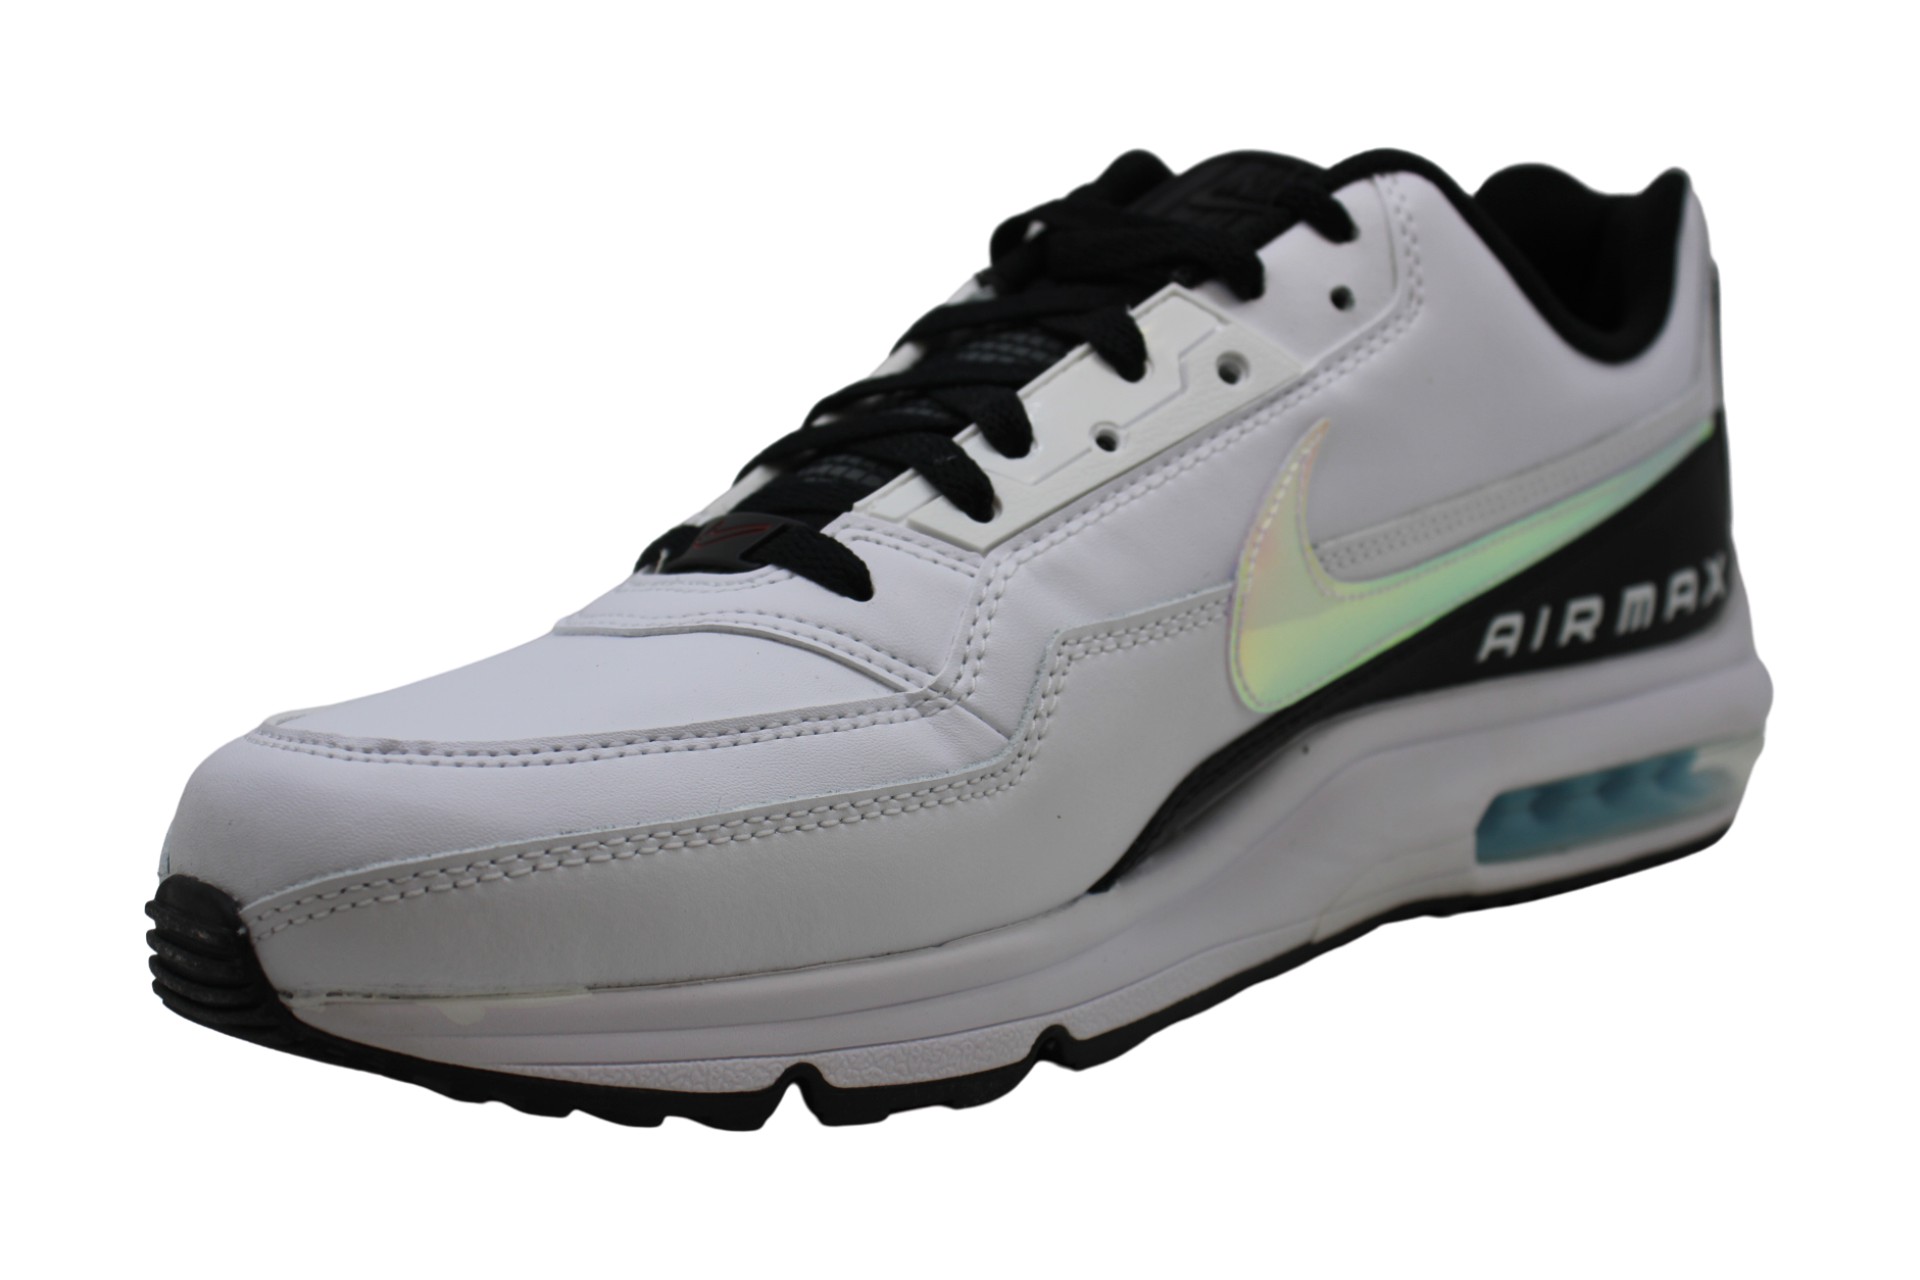 Nike Men S Shoes Air Max Ltd 3 Low Top White Blue Gaze Black White Size 13 0 Ebay